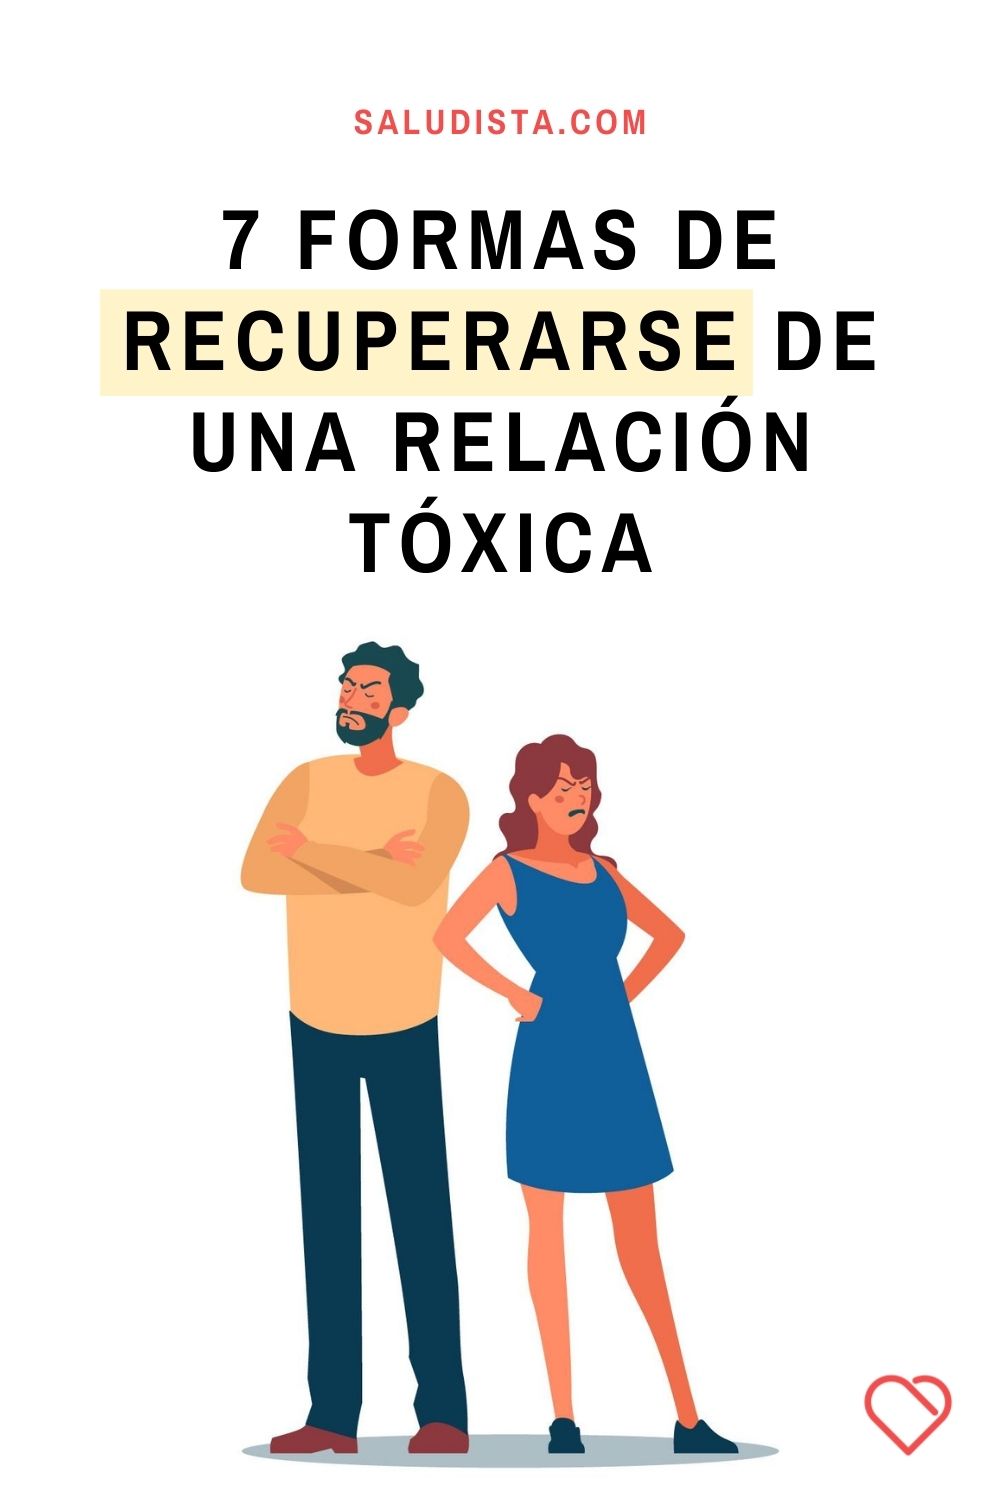 7 formas de recuperarse de una relación tóxica